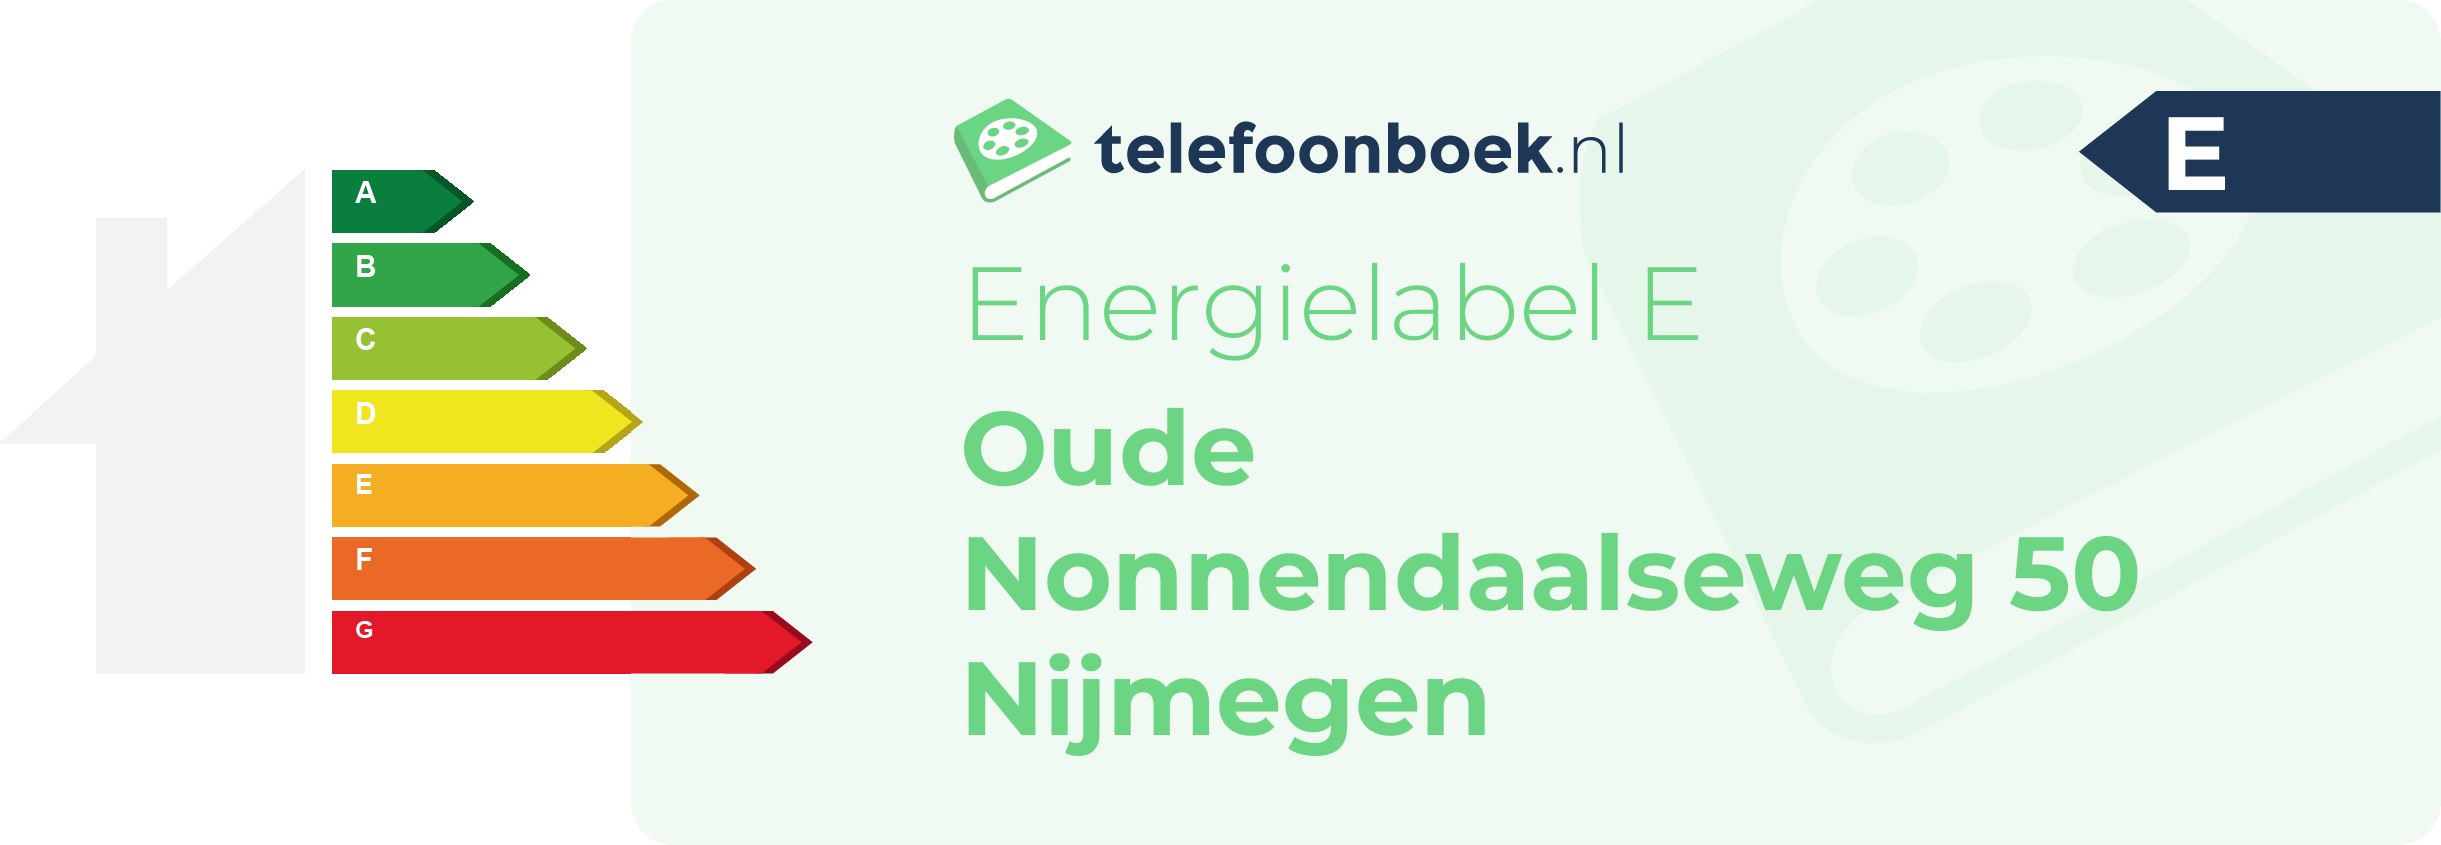 Energielabel Oude Nonnendaalseweg 50 Nijmegen